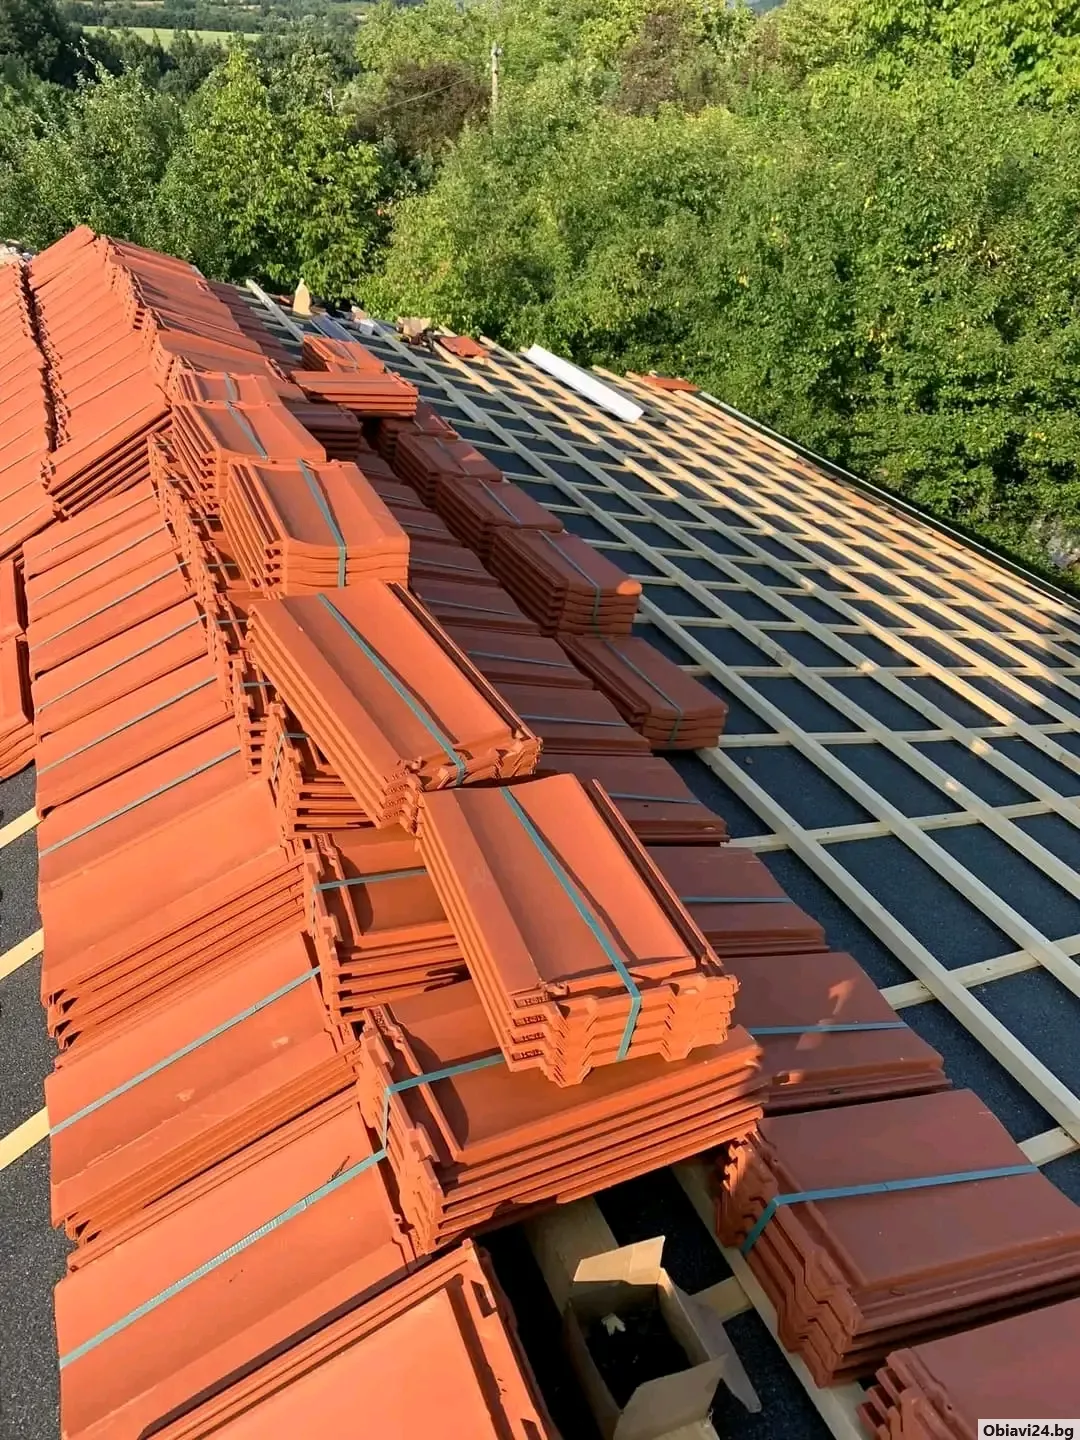 Ремонт на покриви нови покриви частични покривни ремонти Гаранция за качество фирмен договор - obiavi24.bg